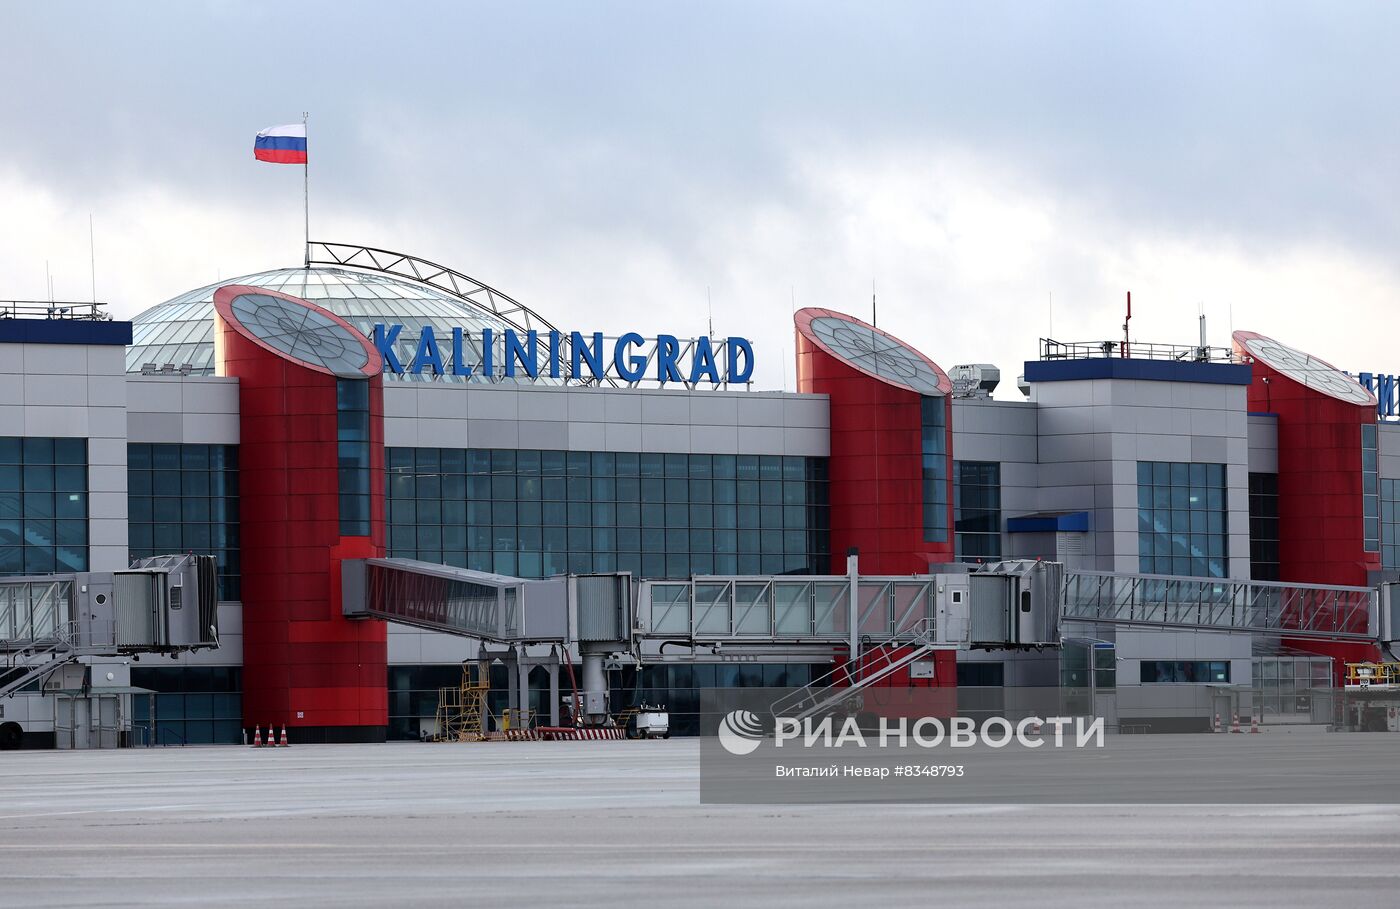 Аэропорт Храброво в Калининграде